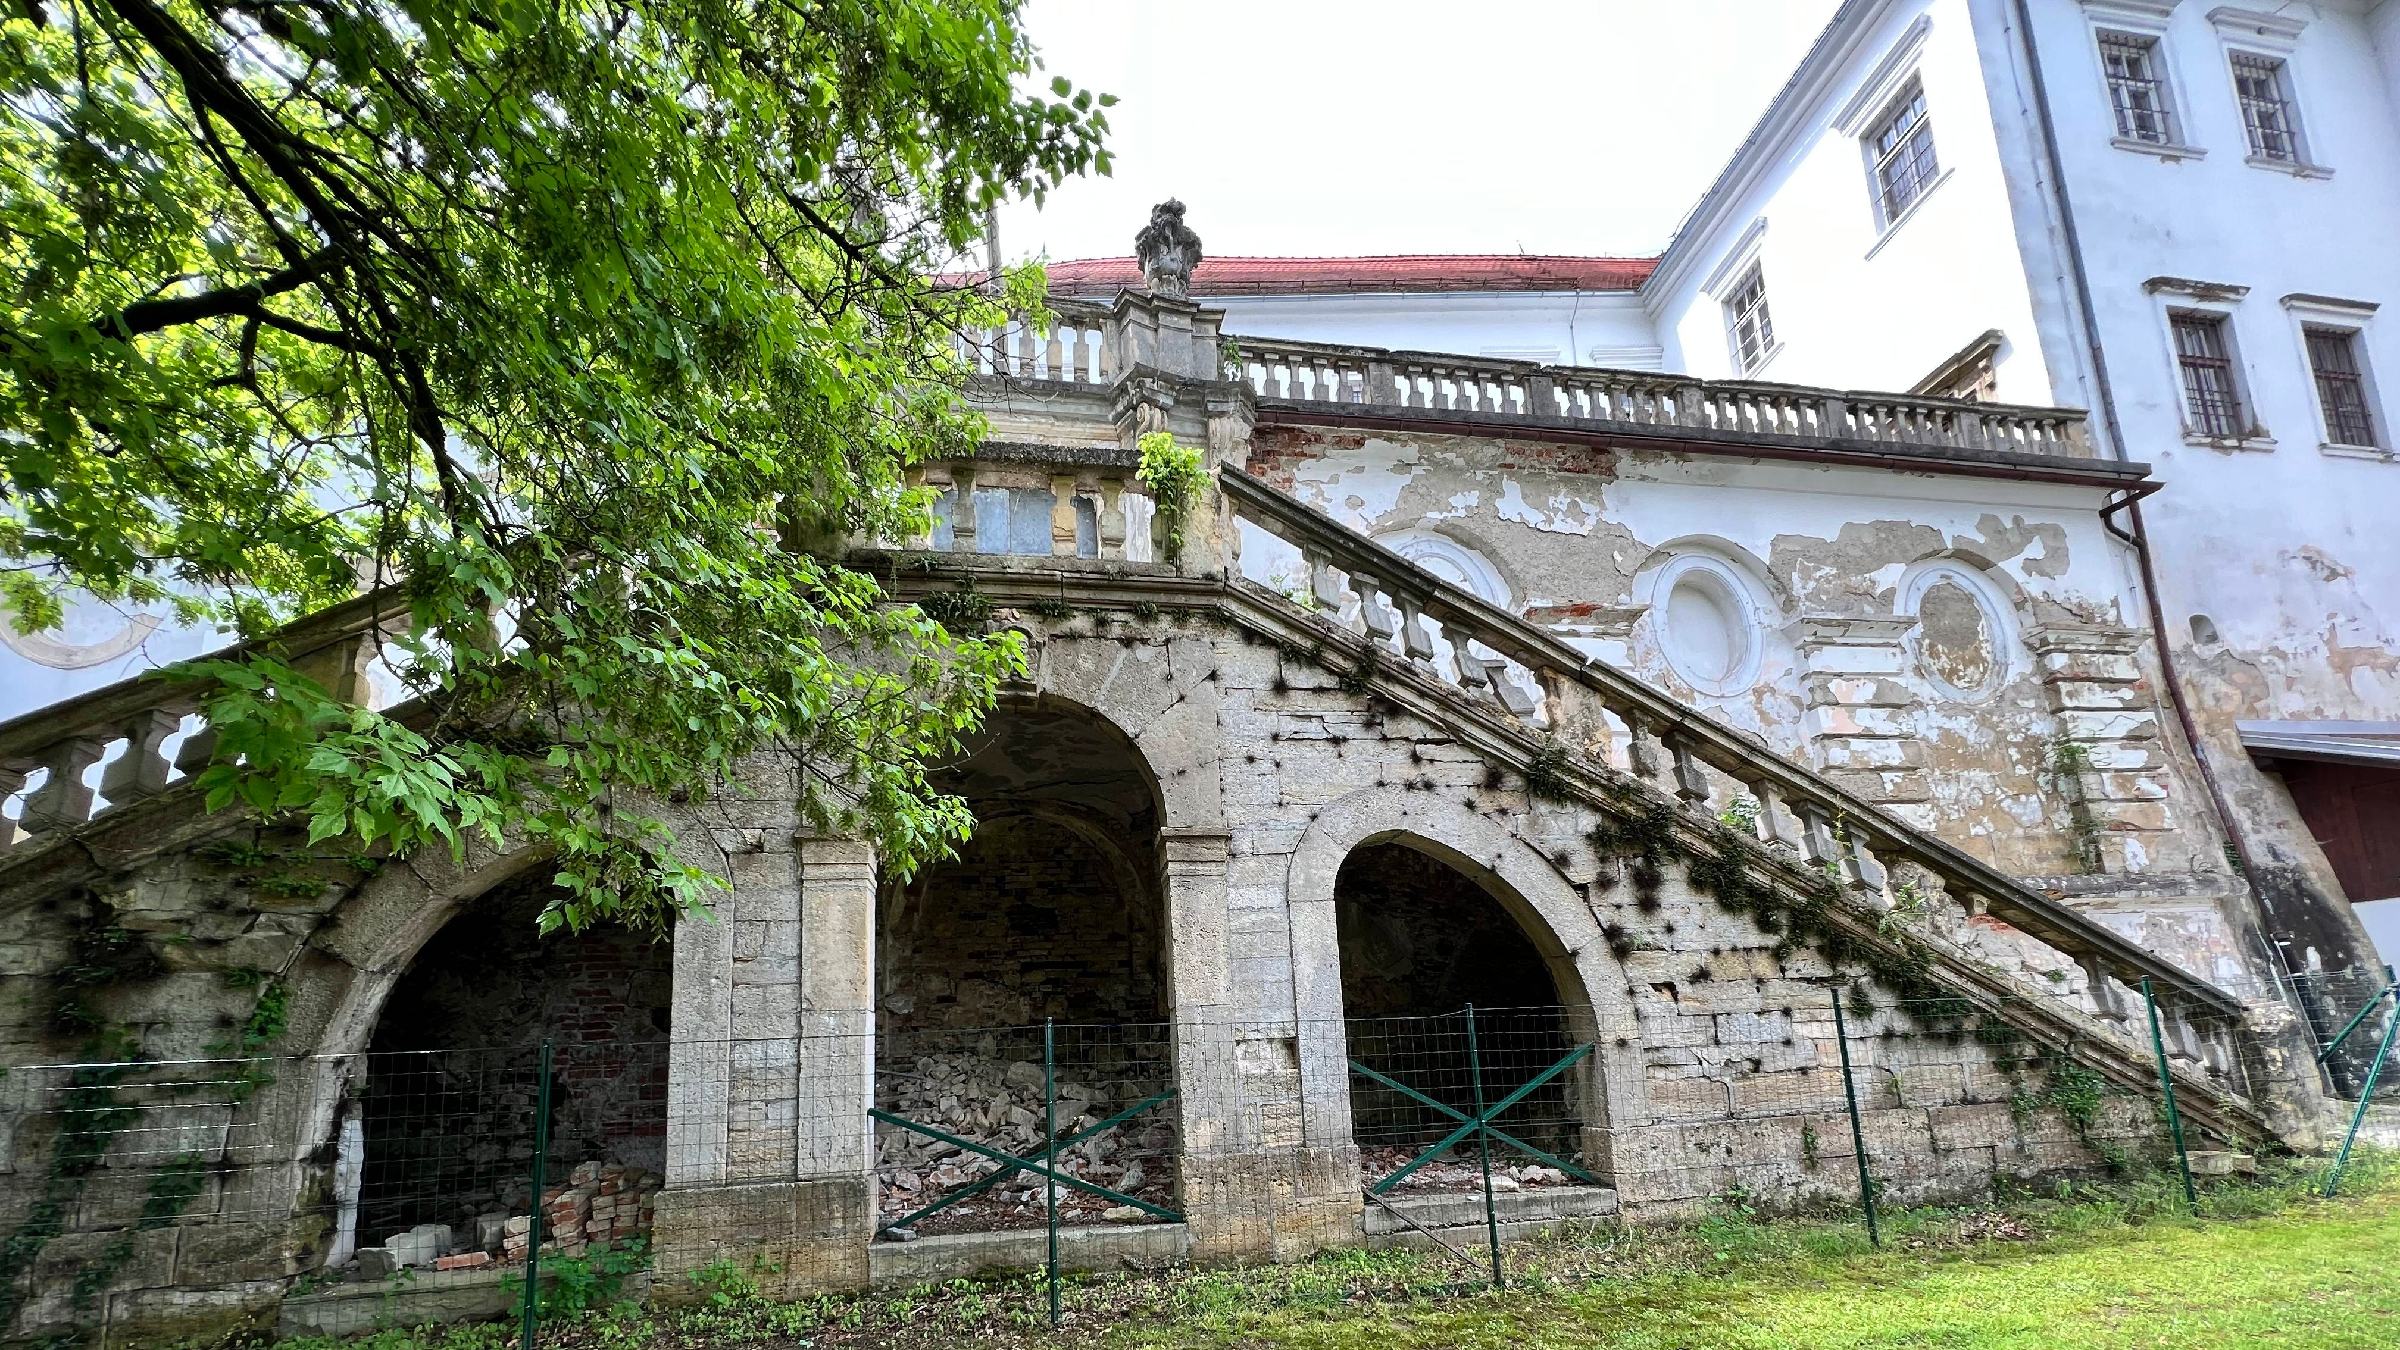 FOTO: Zavod Hrastovec bo obnavljal baročne stopnice, grad pa želi izprazniti